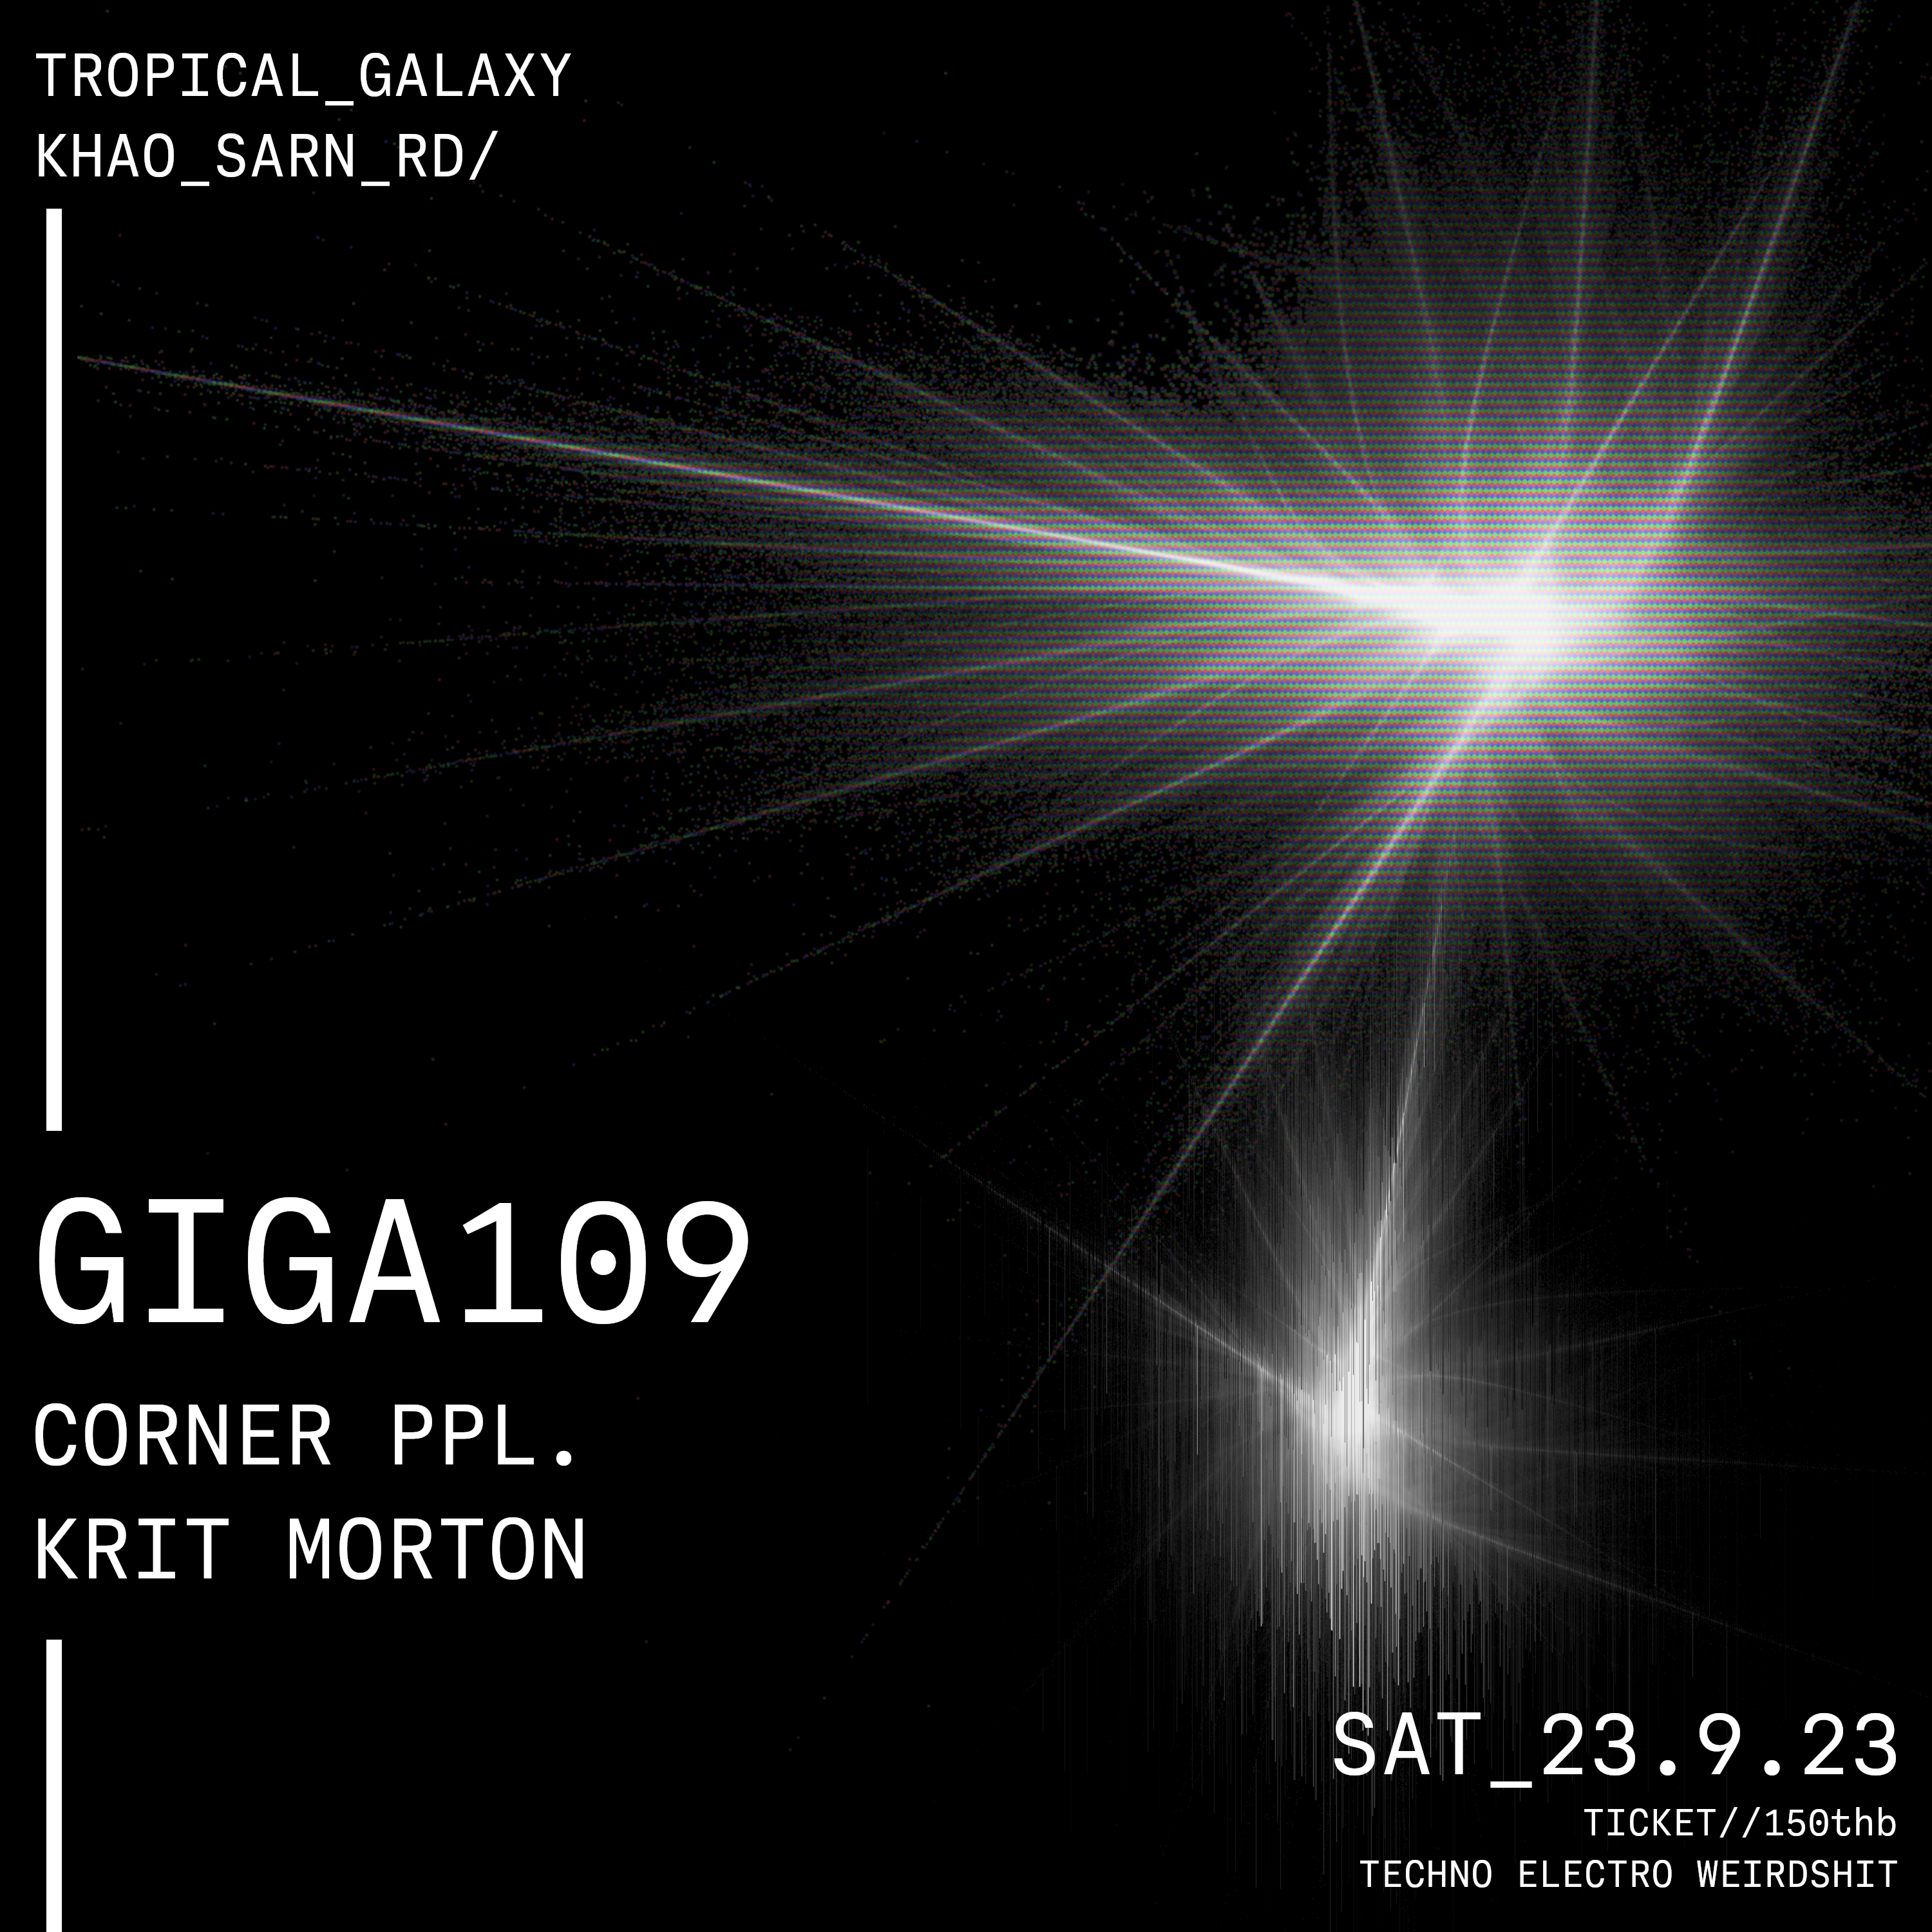 GIGA 109 at Tropical Galaxy, Bangkok